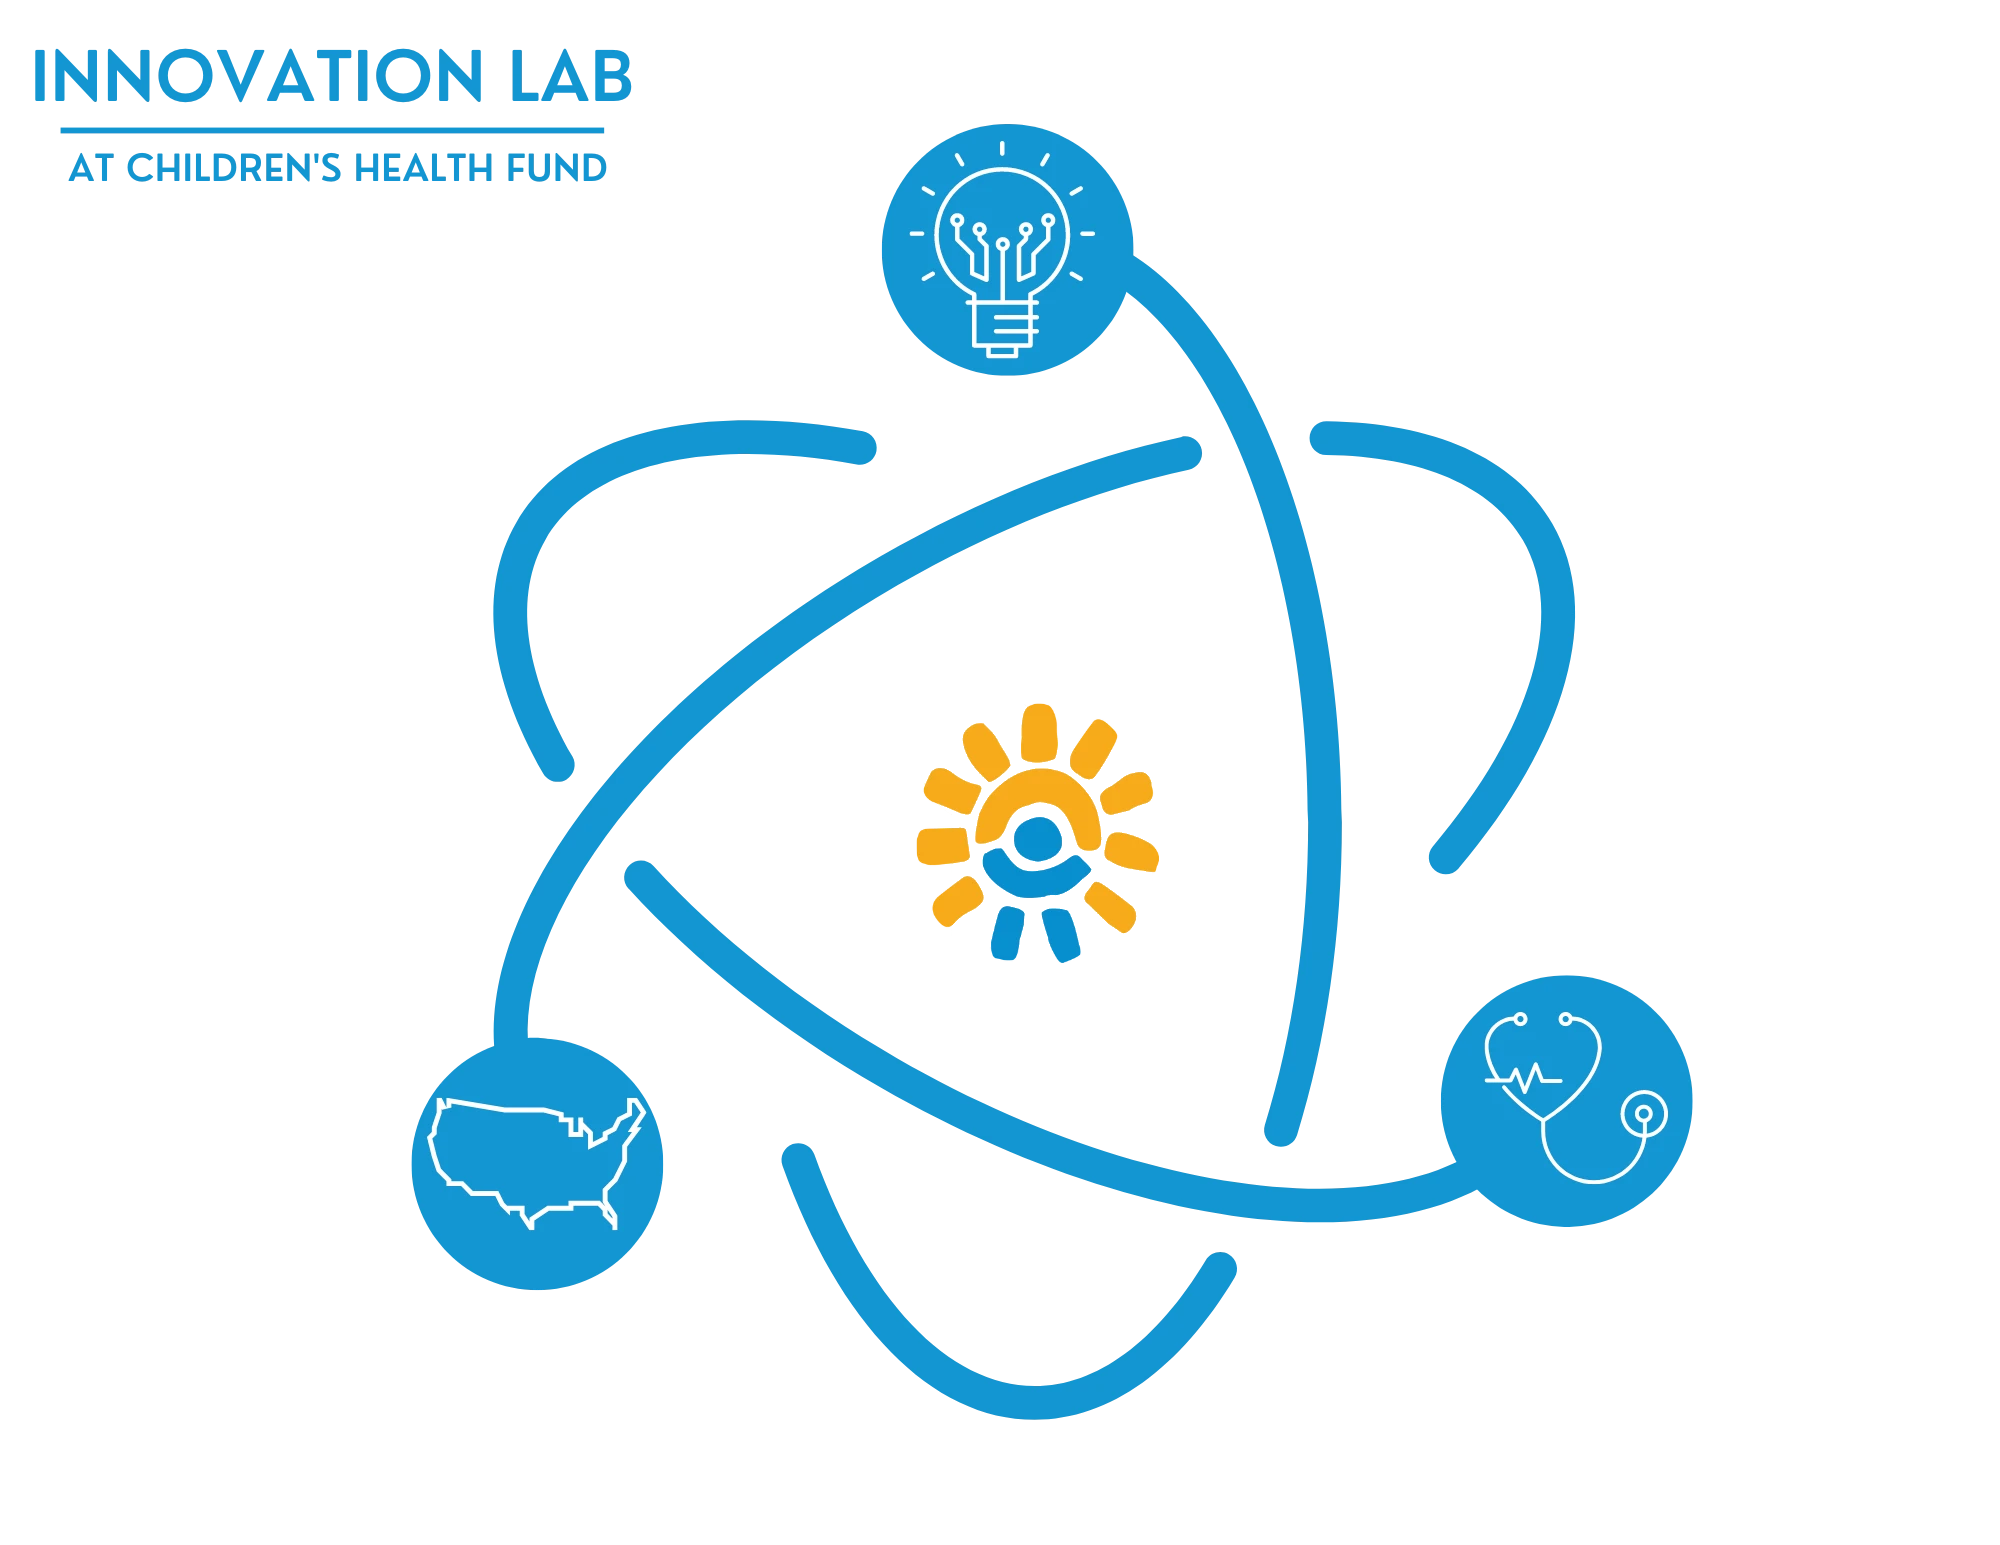 Innovation Lab logo